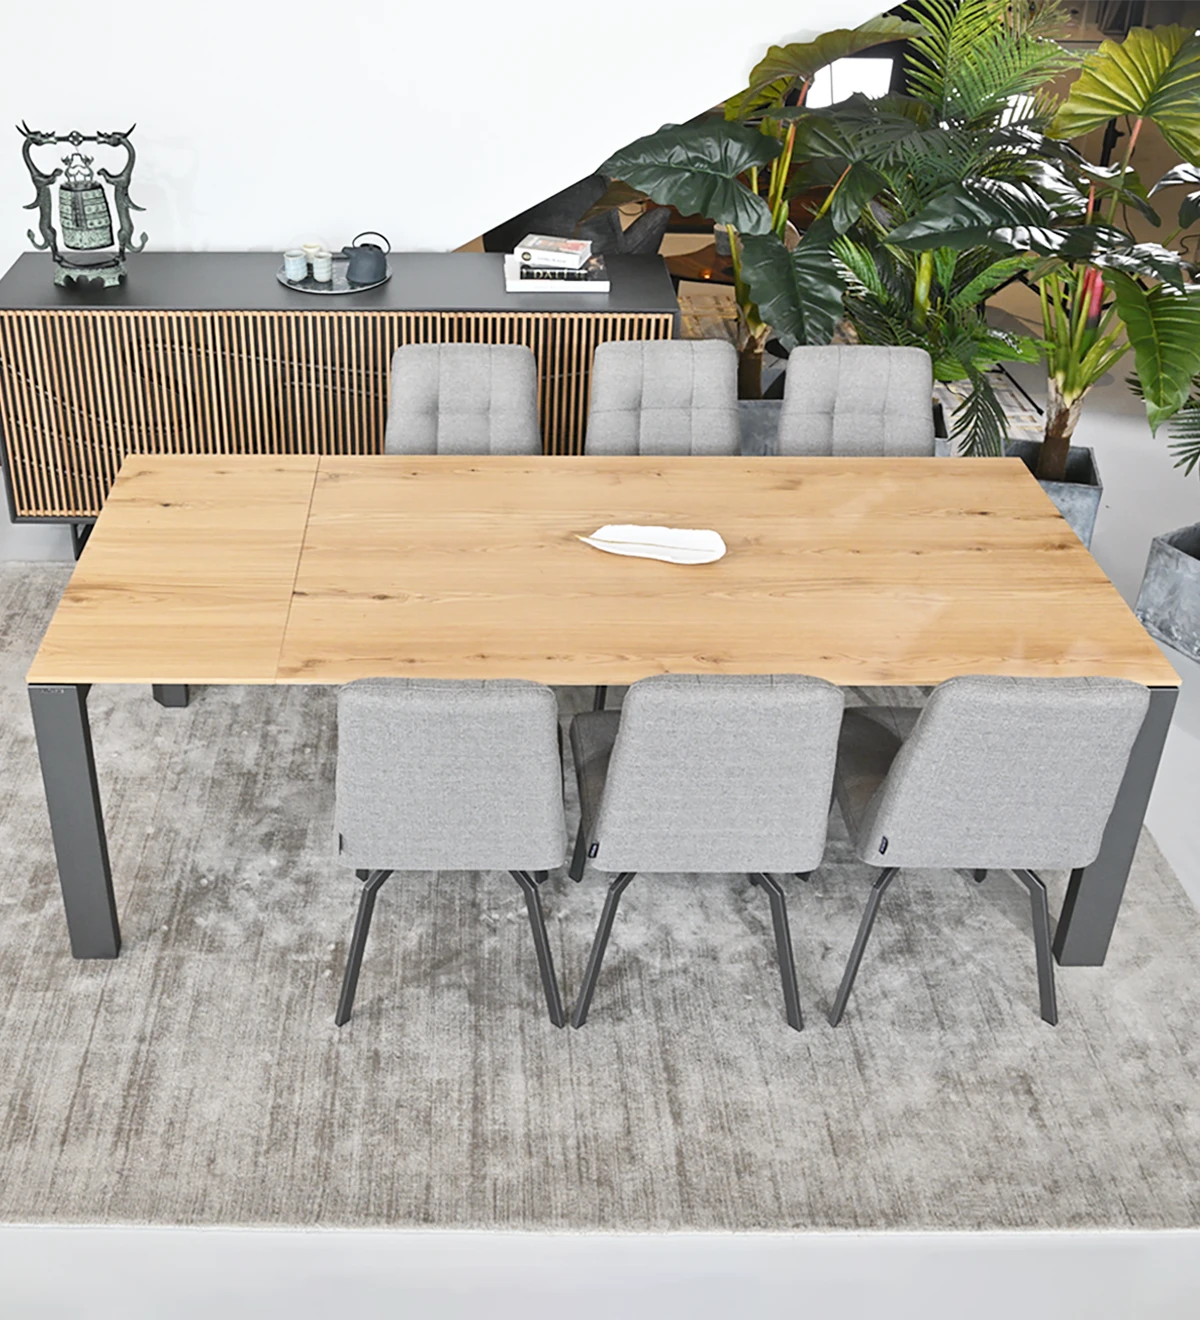 Table de repas rectangulaire extensible avec plateau en chêne naturel, pieds en métal laqué noir.